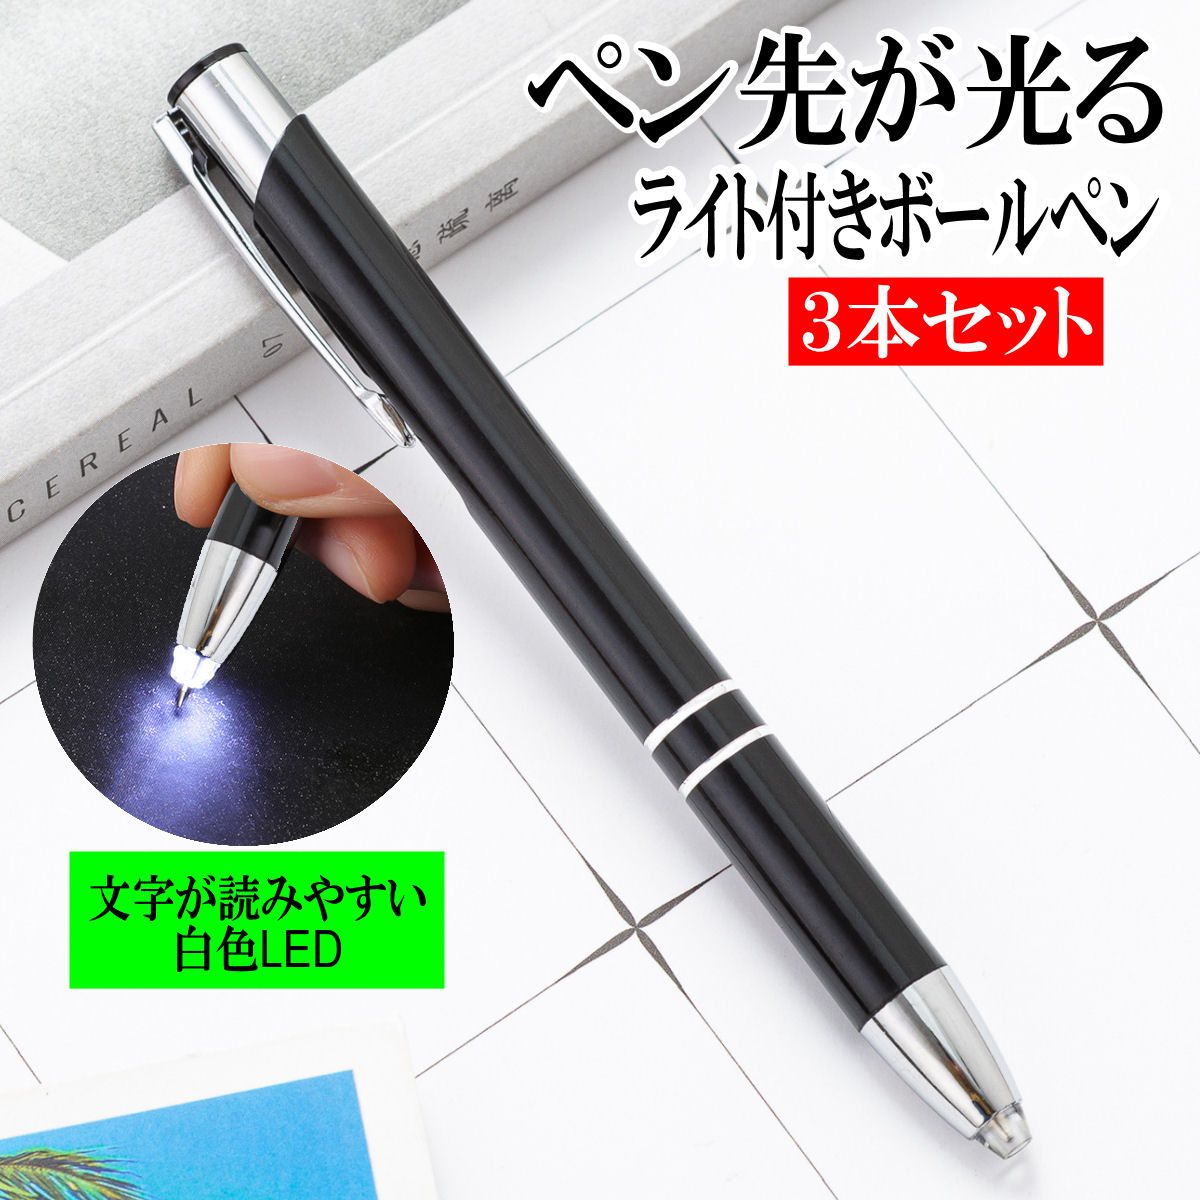 光る ボールペン LED ライト付き ペン先が光る 照明ペン 光る LED ボールペン 0.7mm3本セット